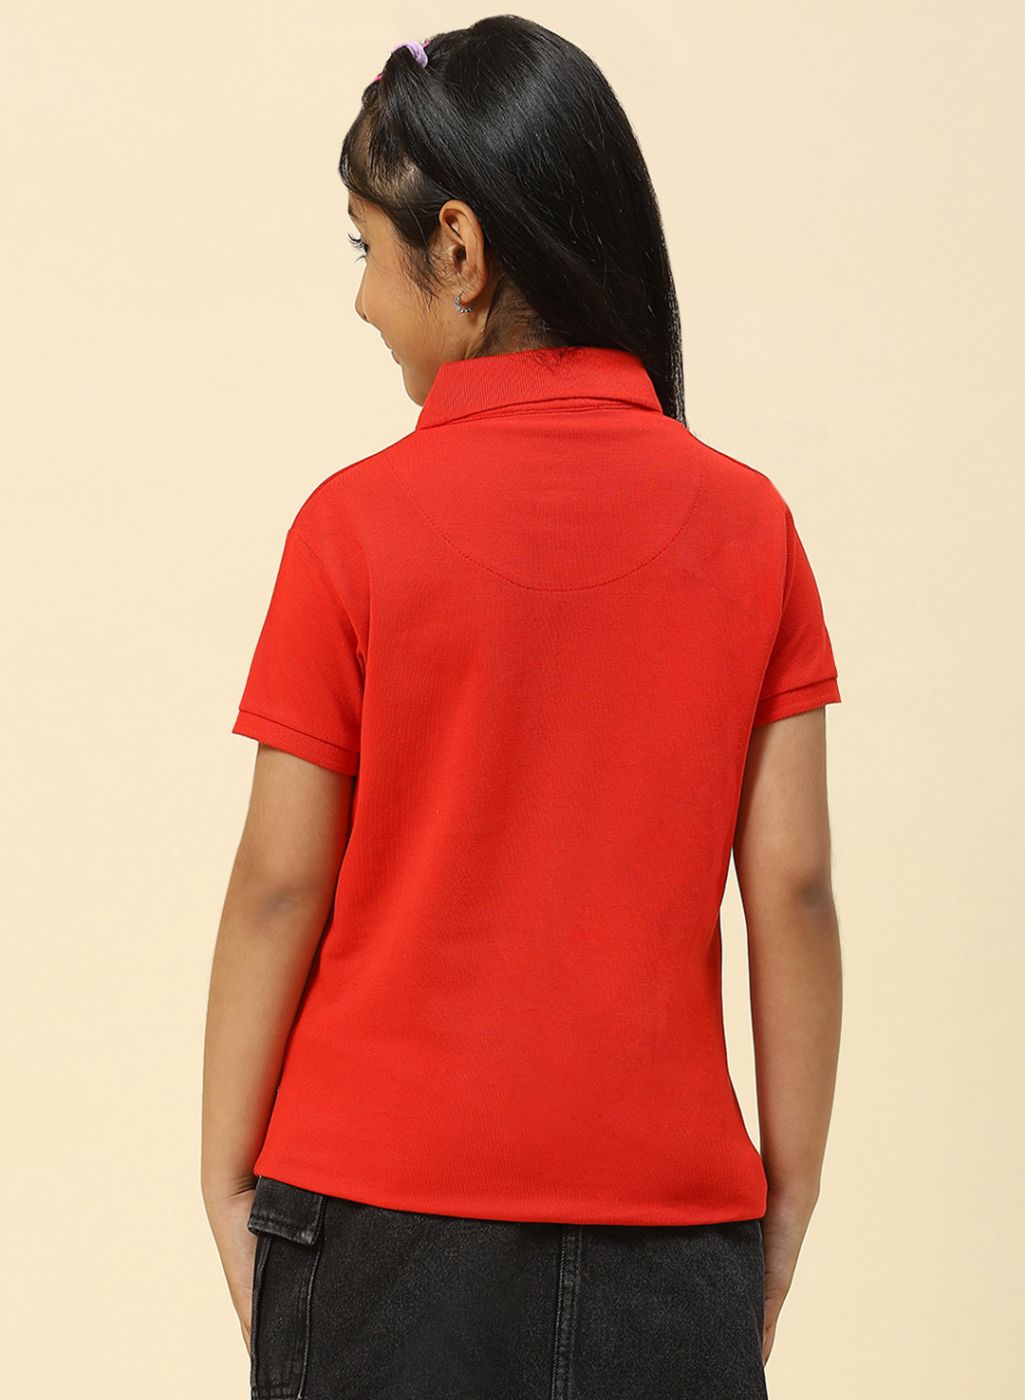 Girls Red Plain T-Shirt